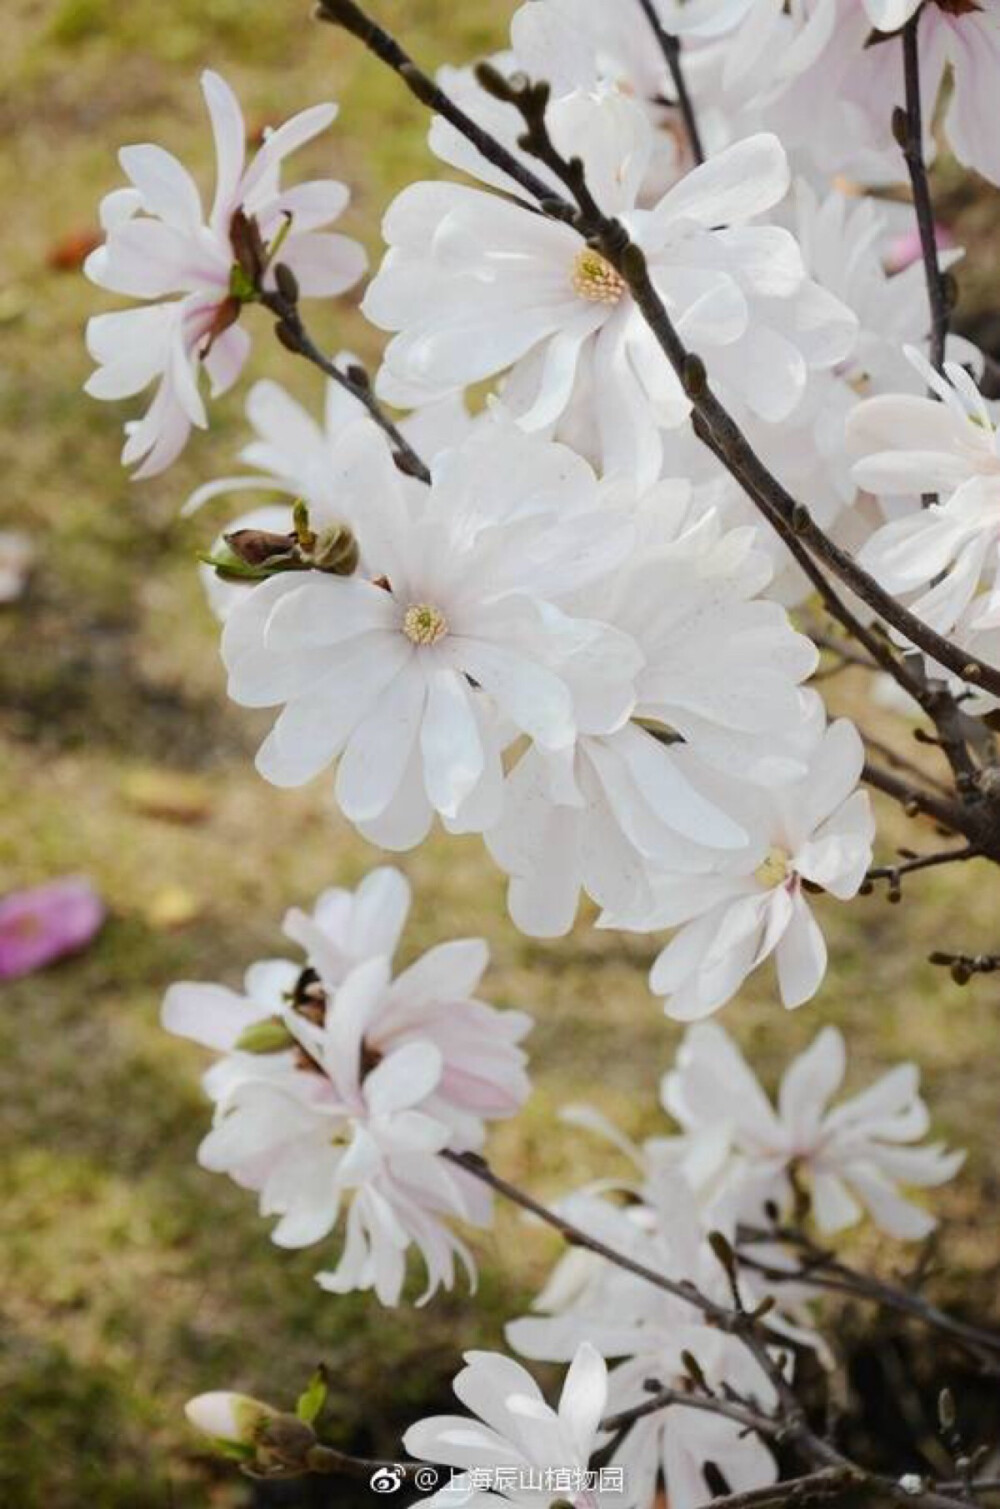 星花玉兰 Yulania stellata [syn. Magnolia stellata]木兰科 玉兰属(或广义木兰属)落叶灌木或小乔木，本种原产于日本，生长缓慢，花先于叶开放，花瓣数较多，呈辐射的星光状排列，故名。有白色和粉红色品种